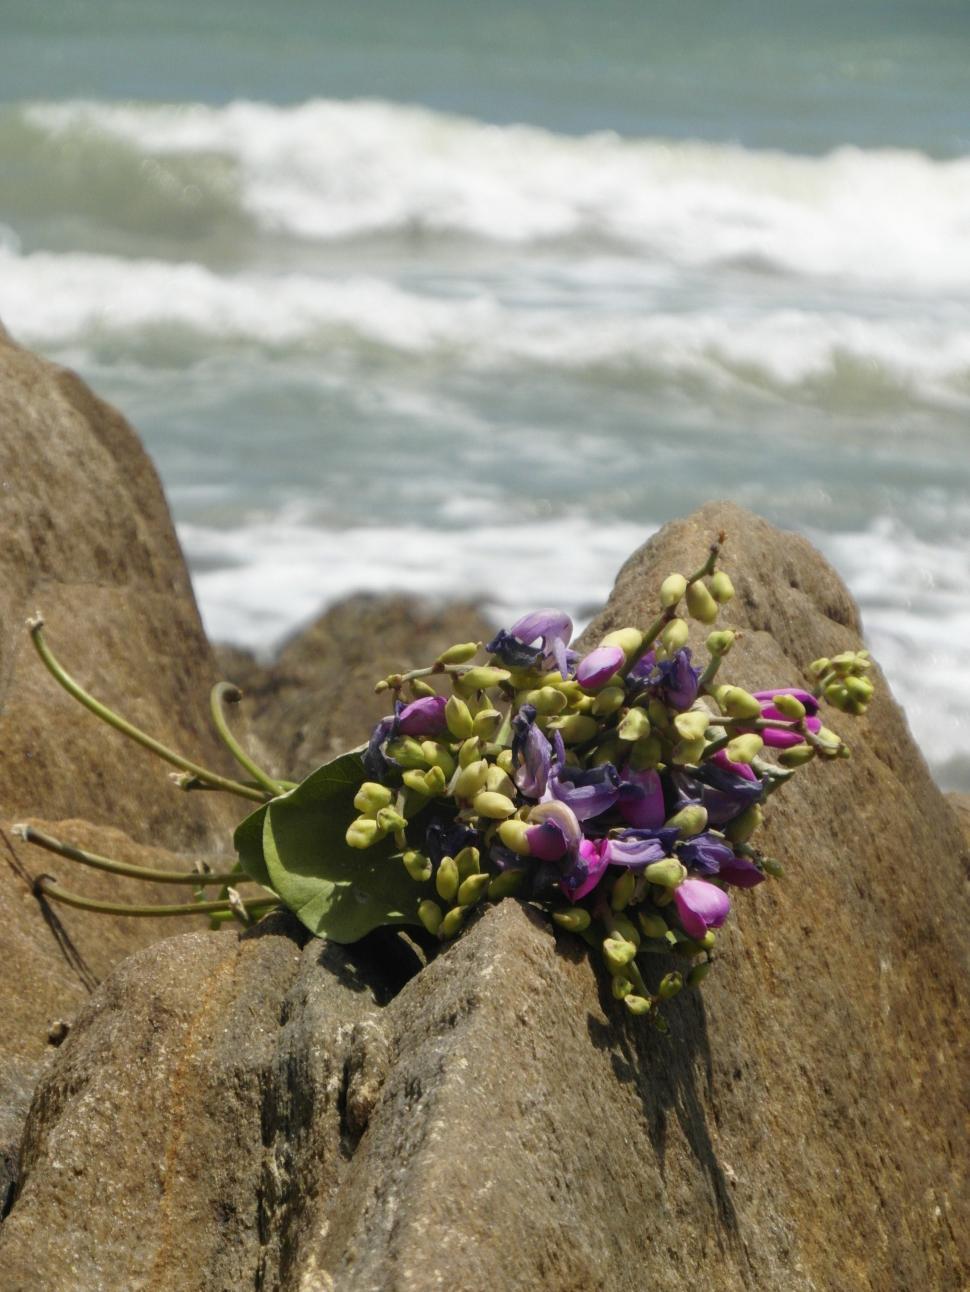 Free Image of Bouquet on Ocean Rocks 